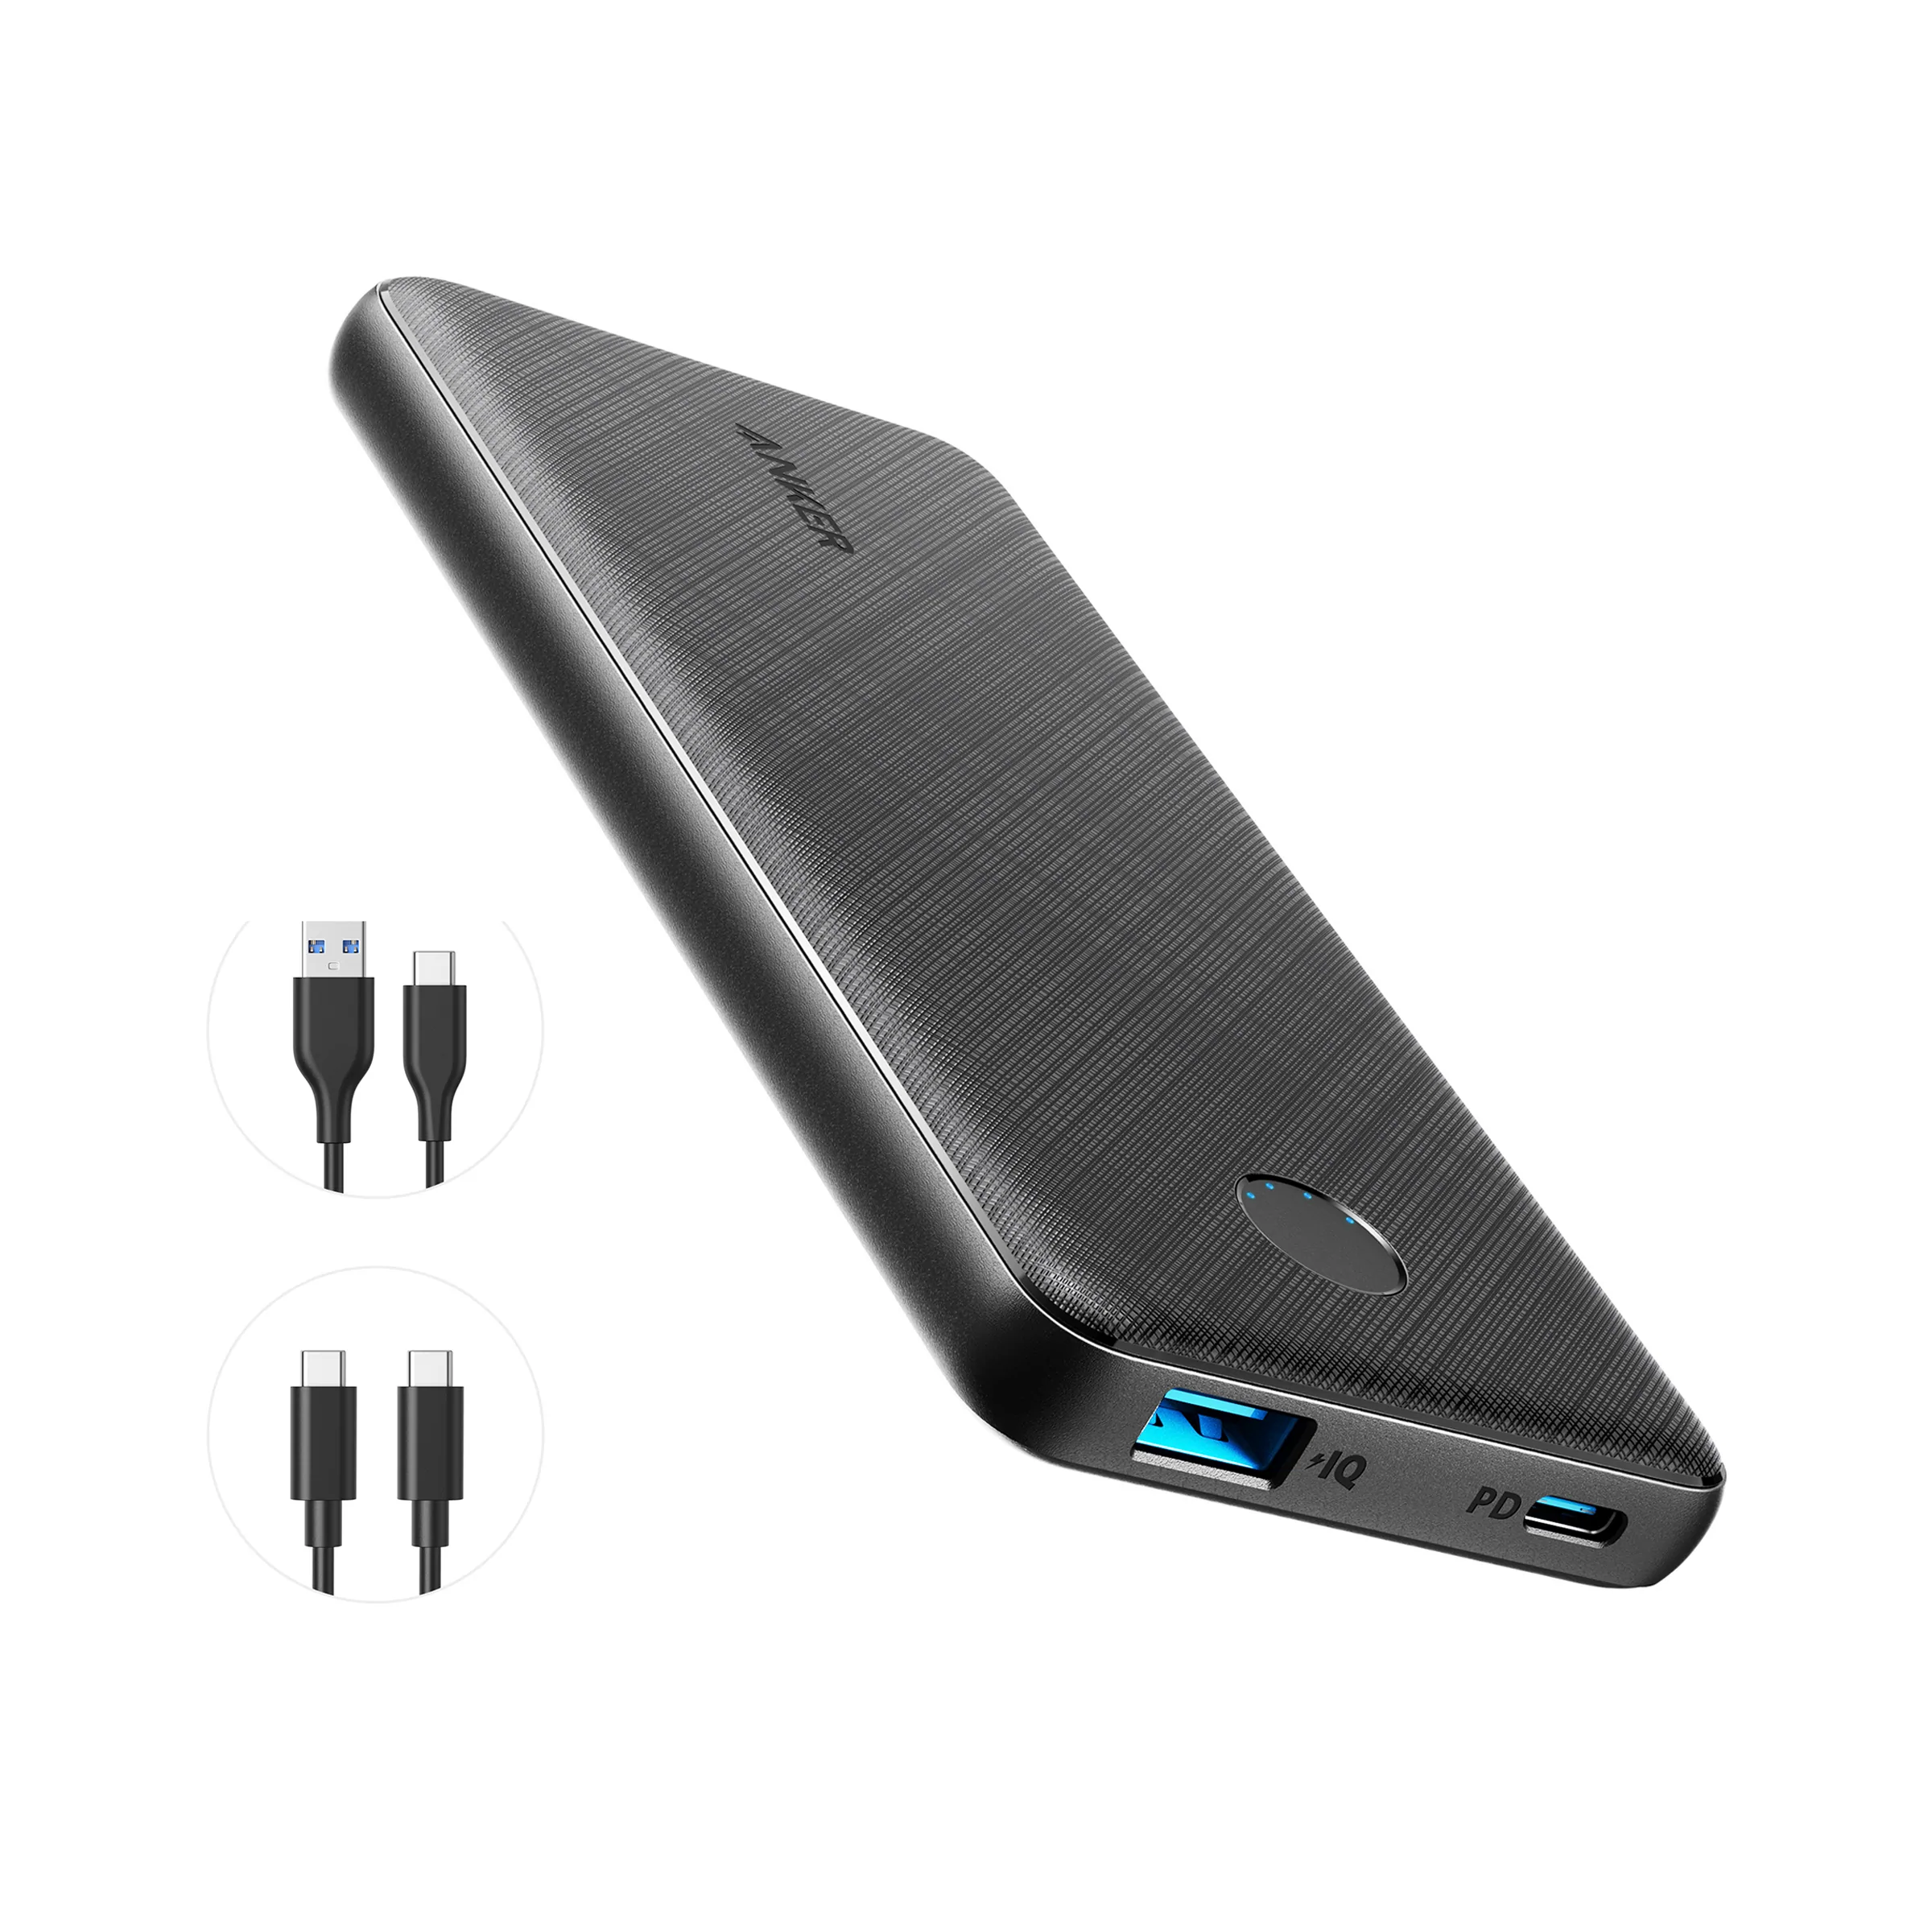  BONAI Cargador portátil de 20000 mAh, 4 salidas USB, polímero  de aluminio, cargador de batería portátil de 2.0 A, entrada máxima  compatible con iPhone 13 11 XR para viajes por carretera